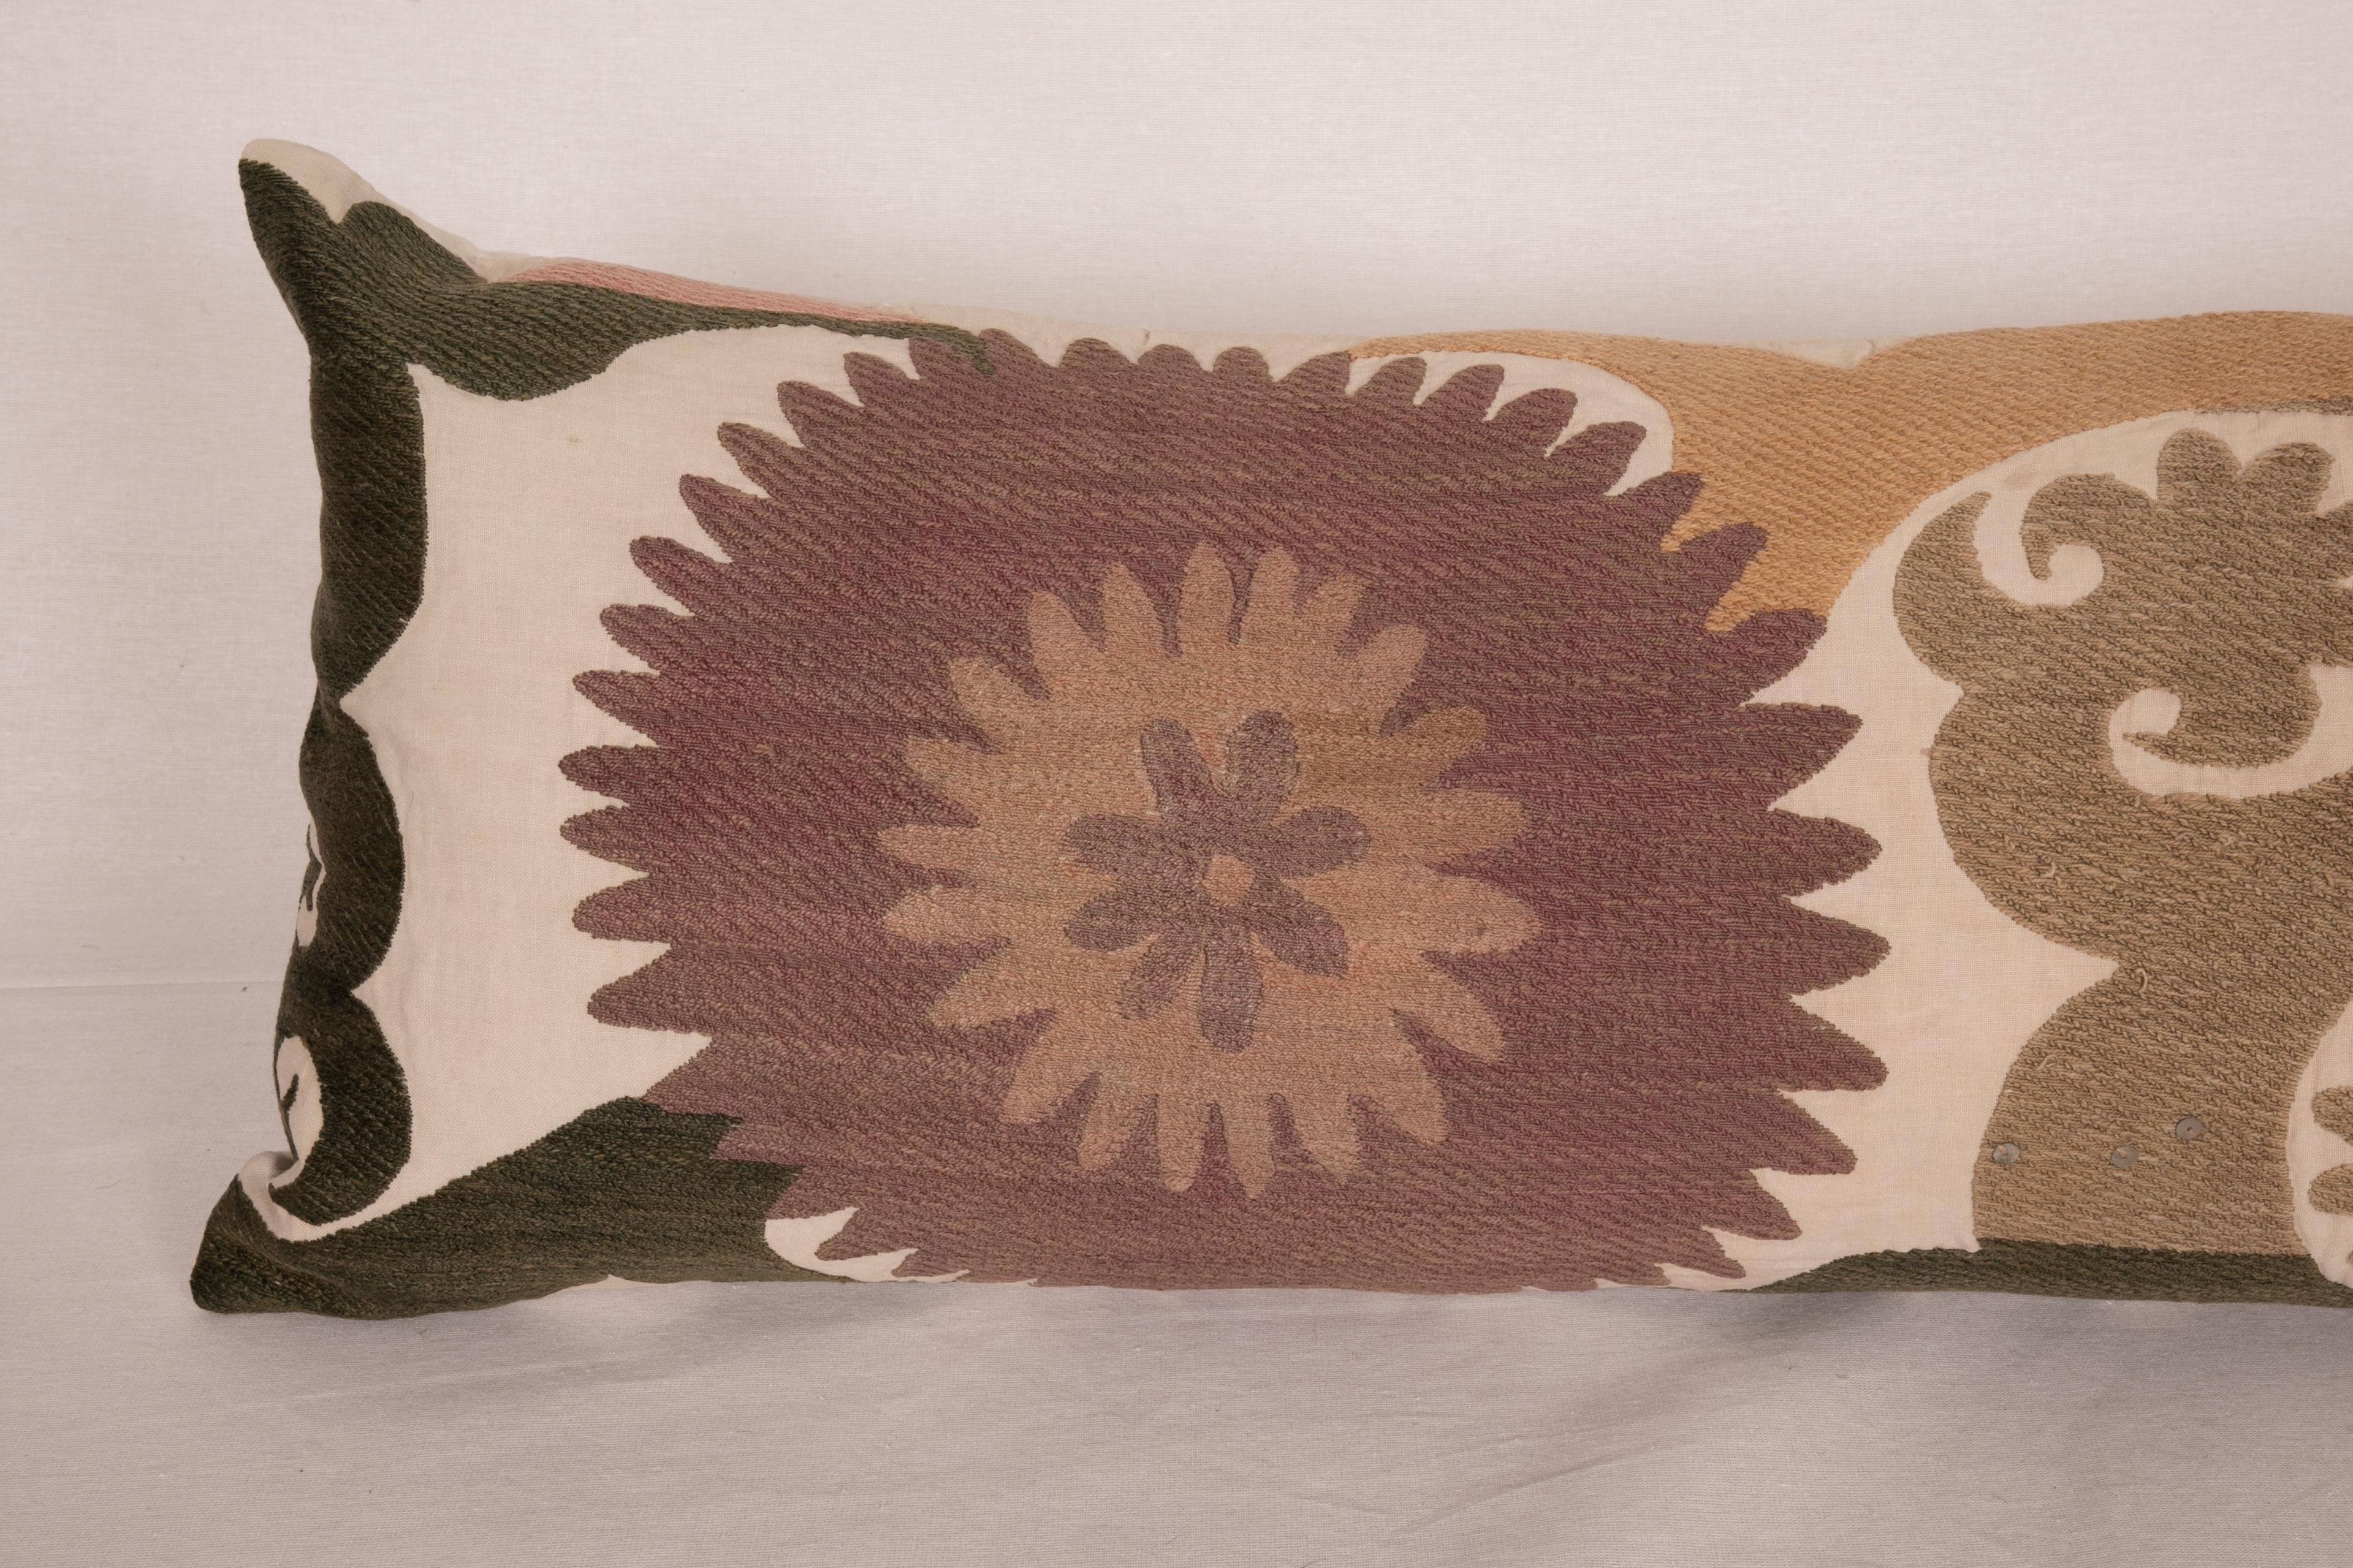 Uzbek Lumbar Pillow Case Made from an Early 20th C. Suzani, 1920s